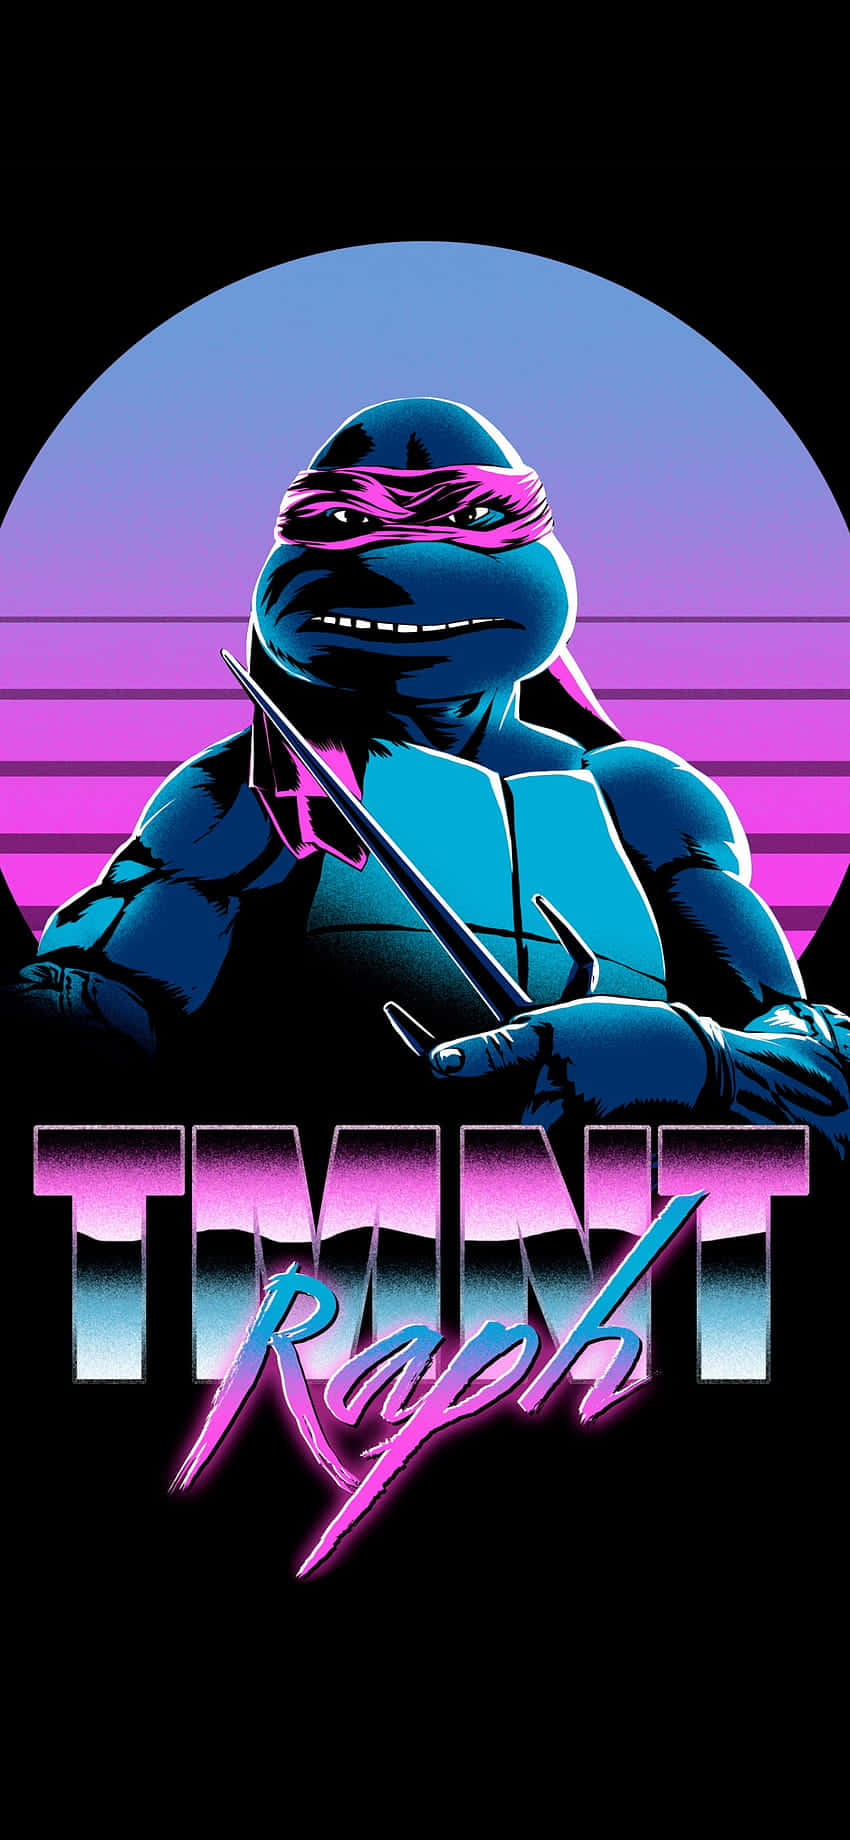 Colorful Retro Teenage Mutant Ninja Turtles Comic Book Wallpaper